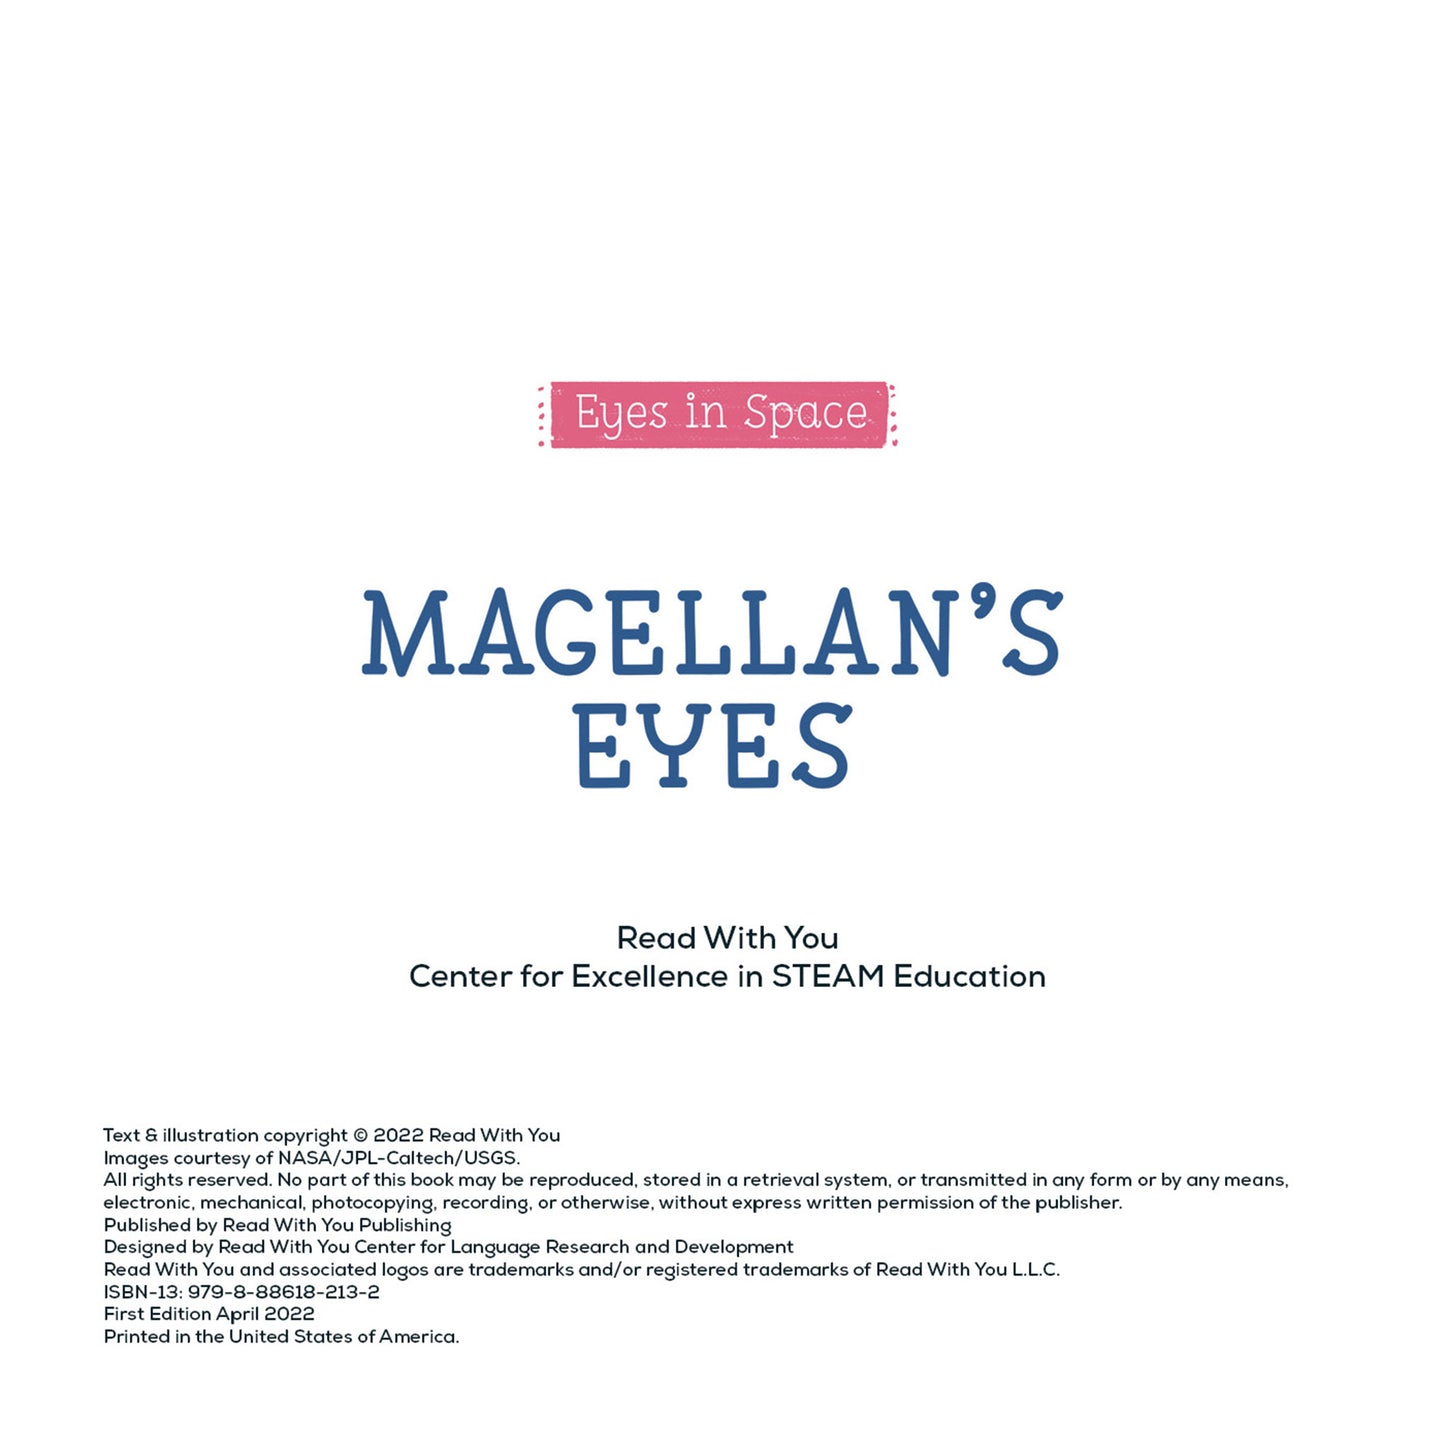 Magellan's Eyes